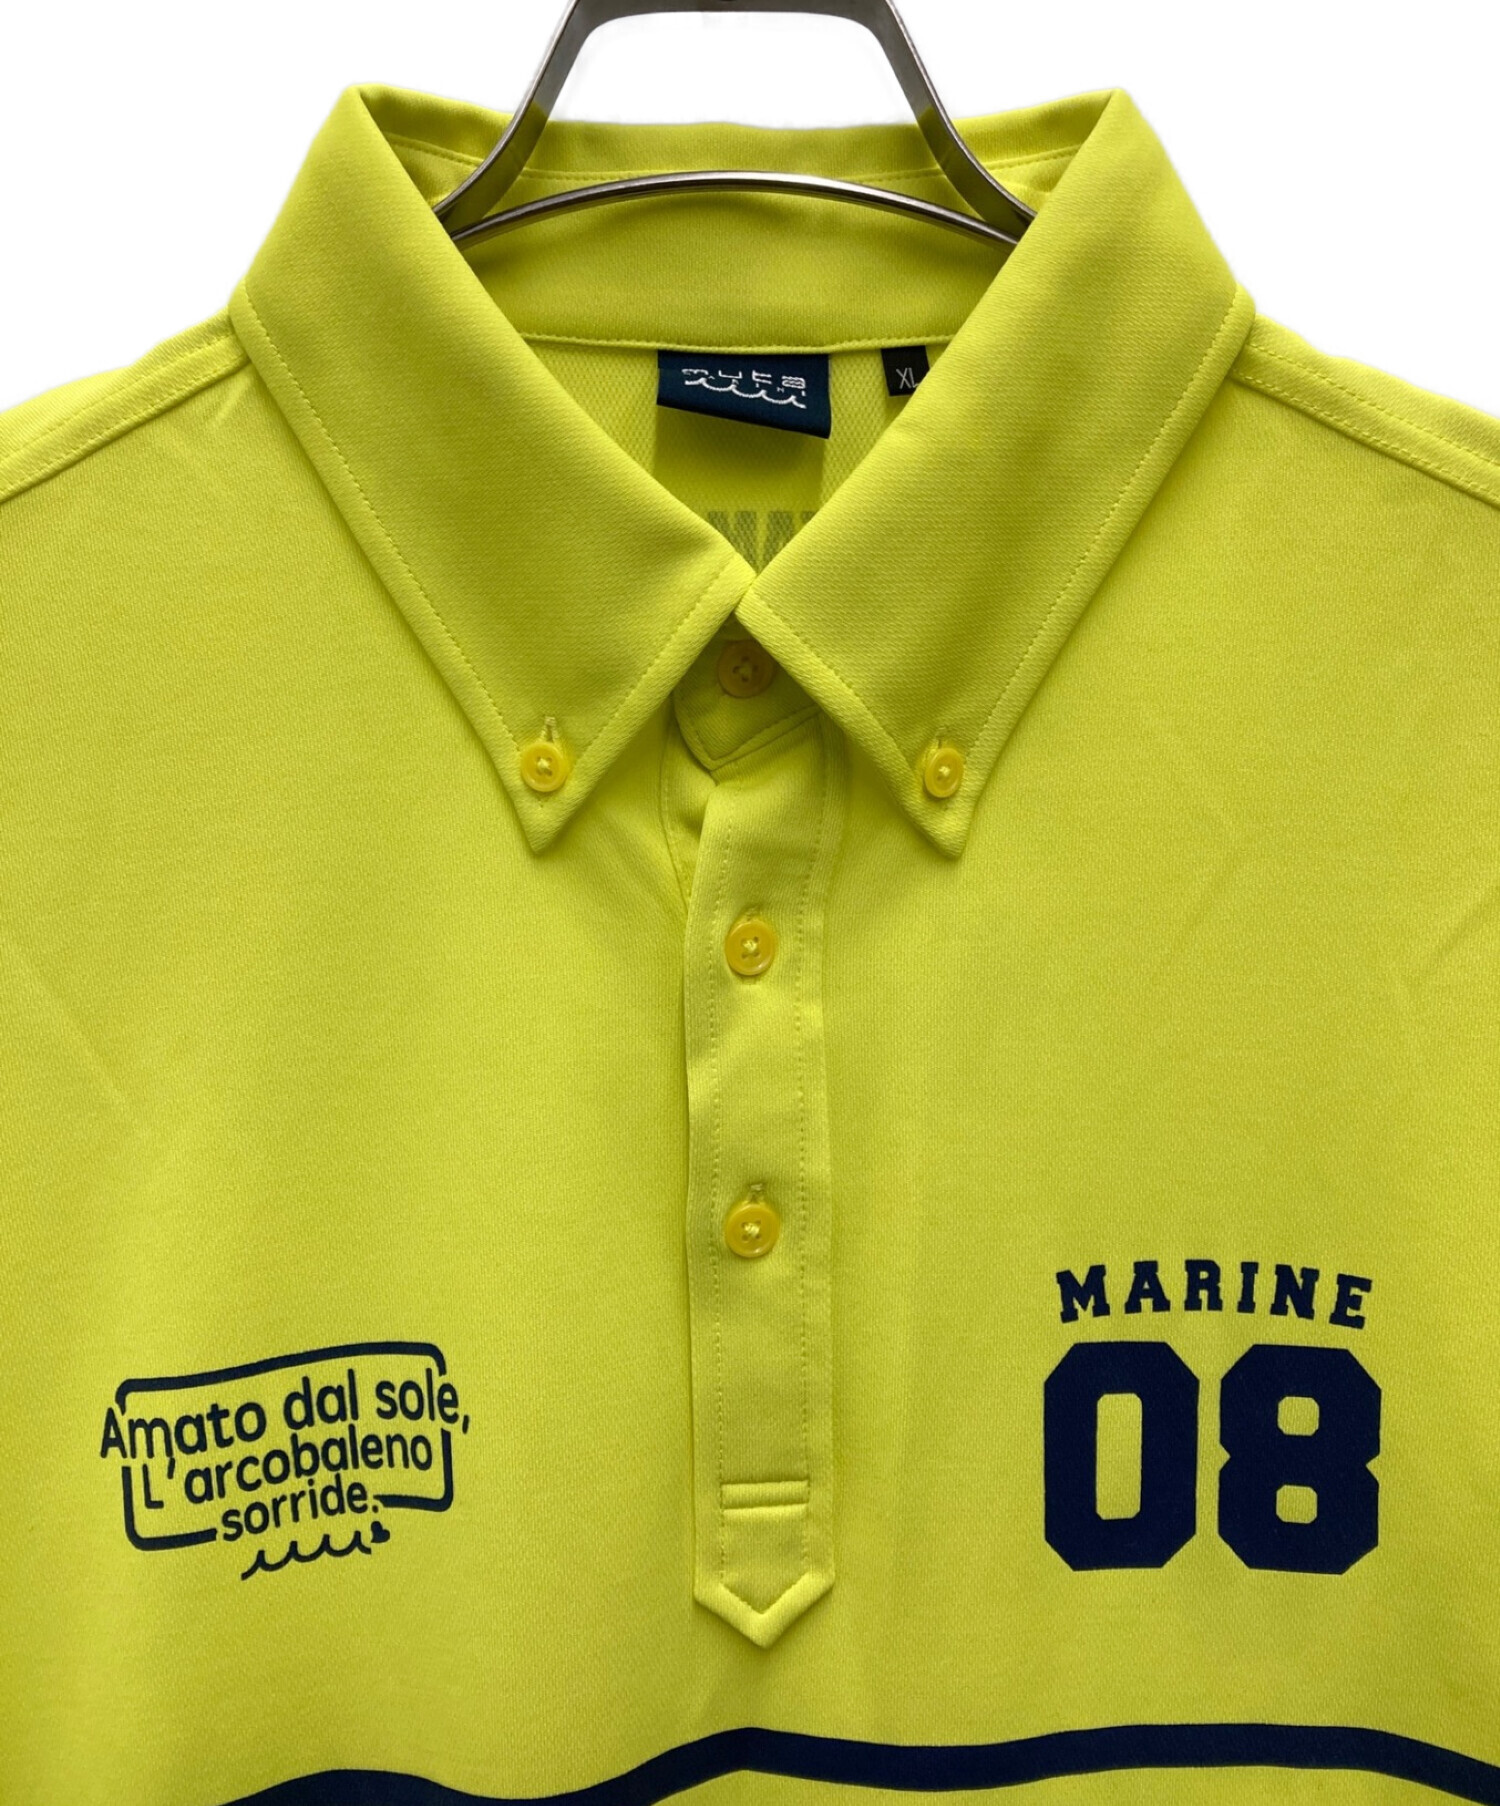 muta MARINE (ムータマリン) ゴルフウェア(ポロシャツ) イエロー サイズ:XL